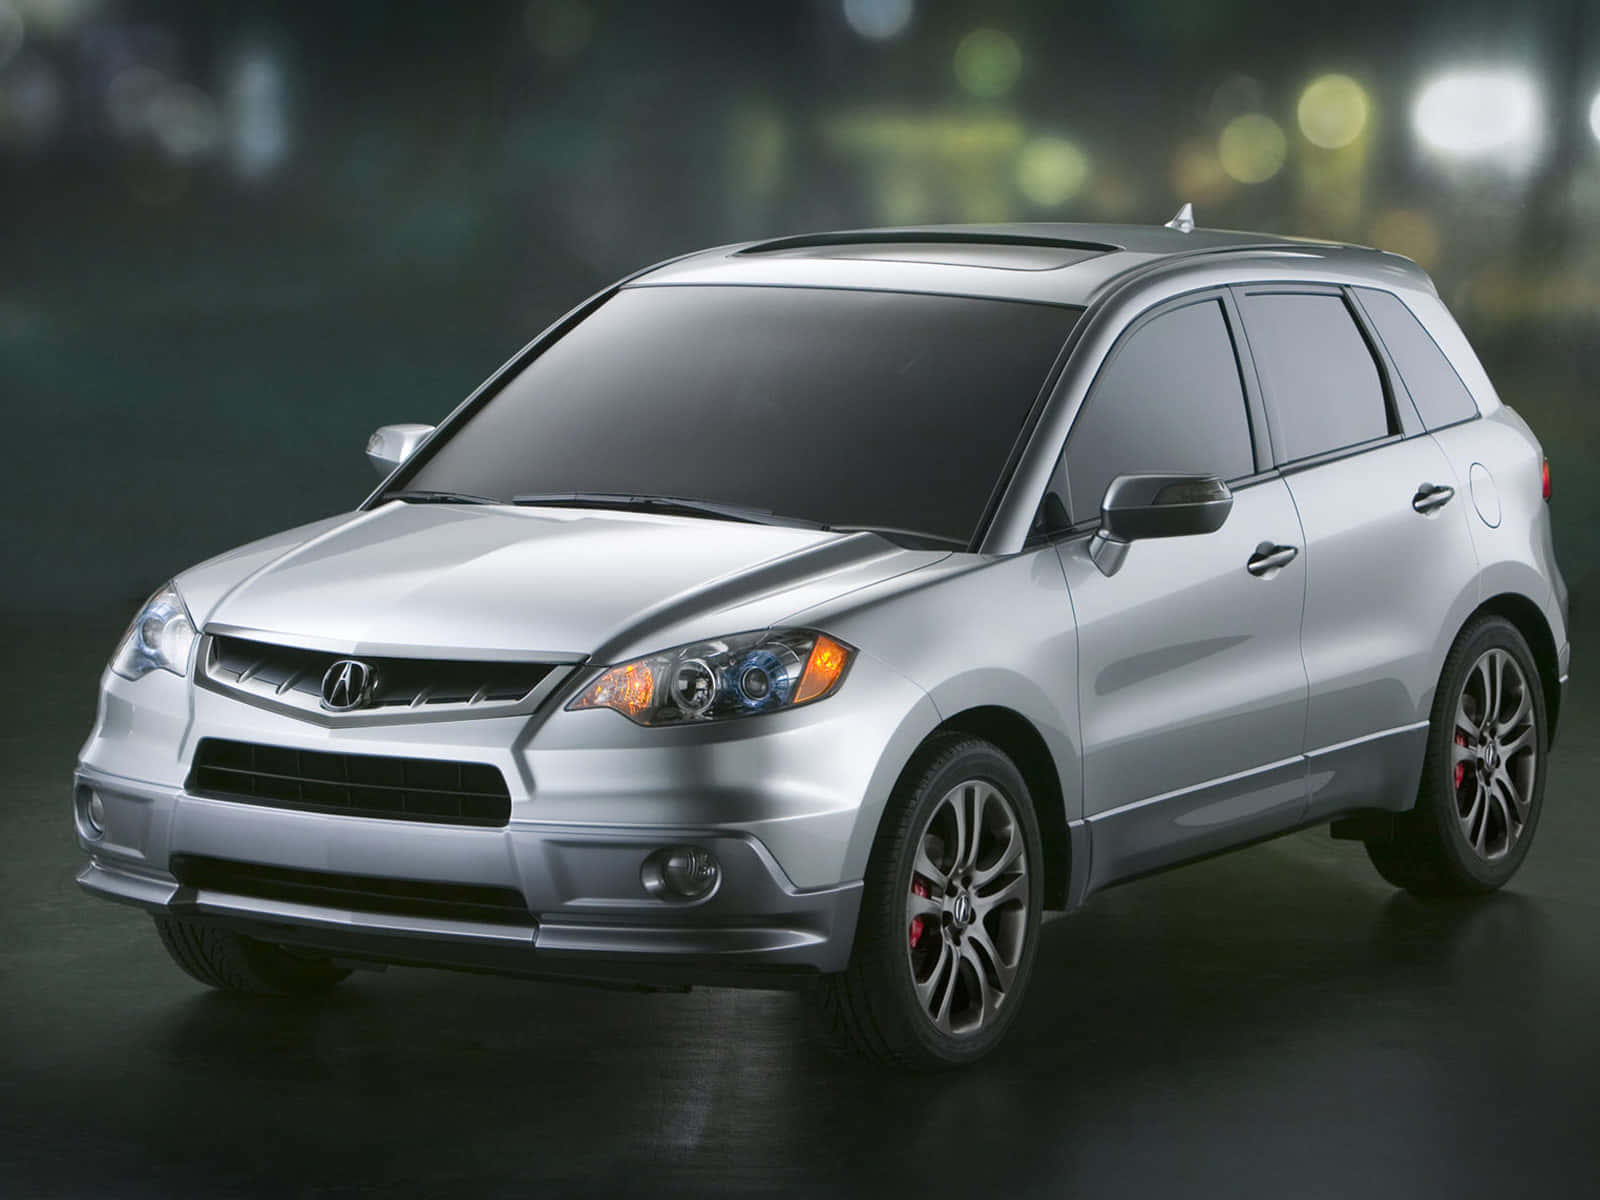 Der2012 Acura Cvt Wird In Einem Dunklen Raum Gezeigt.